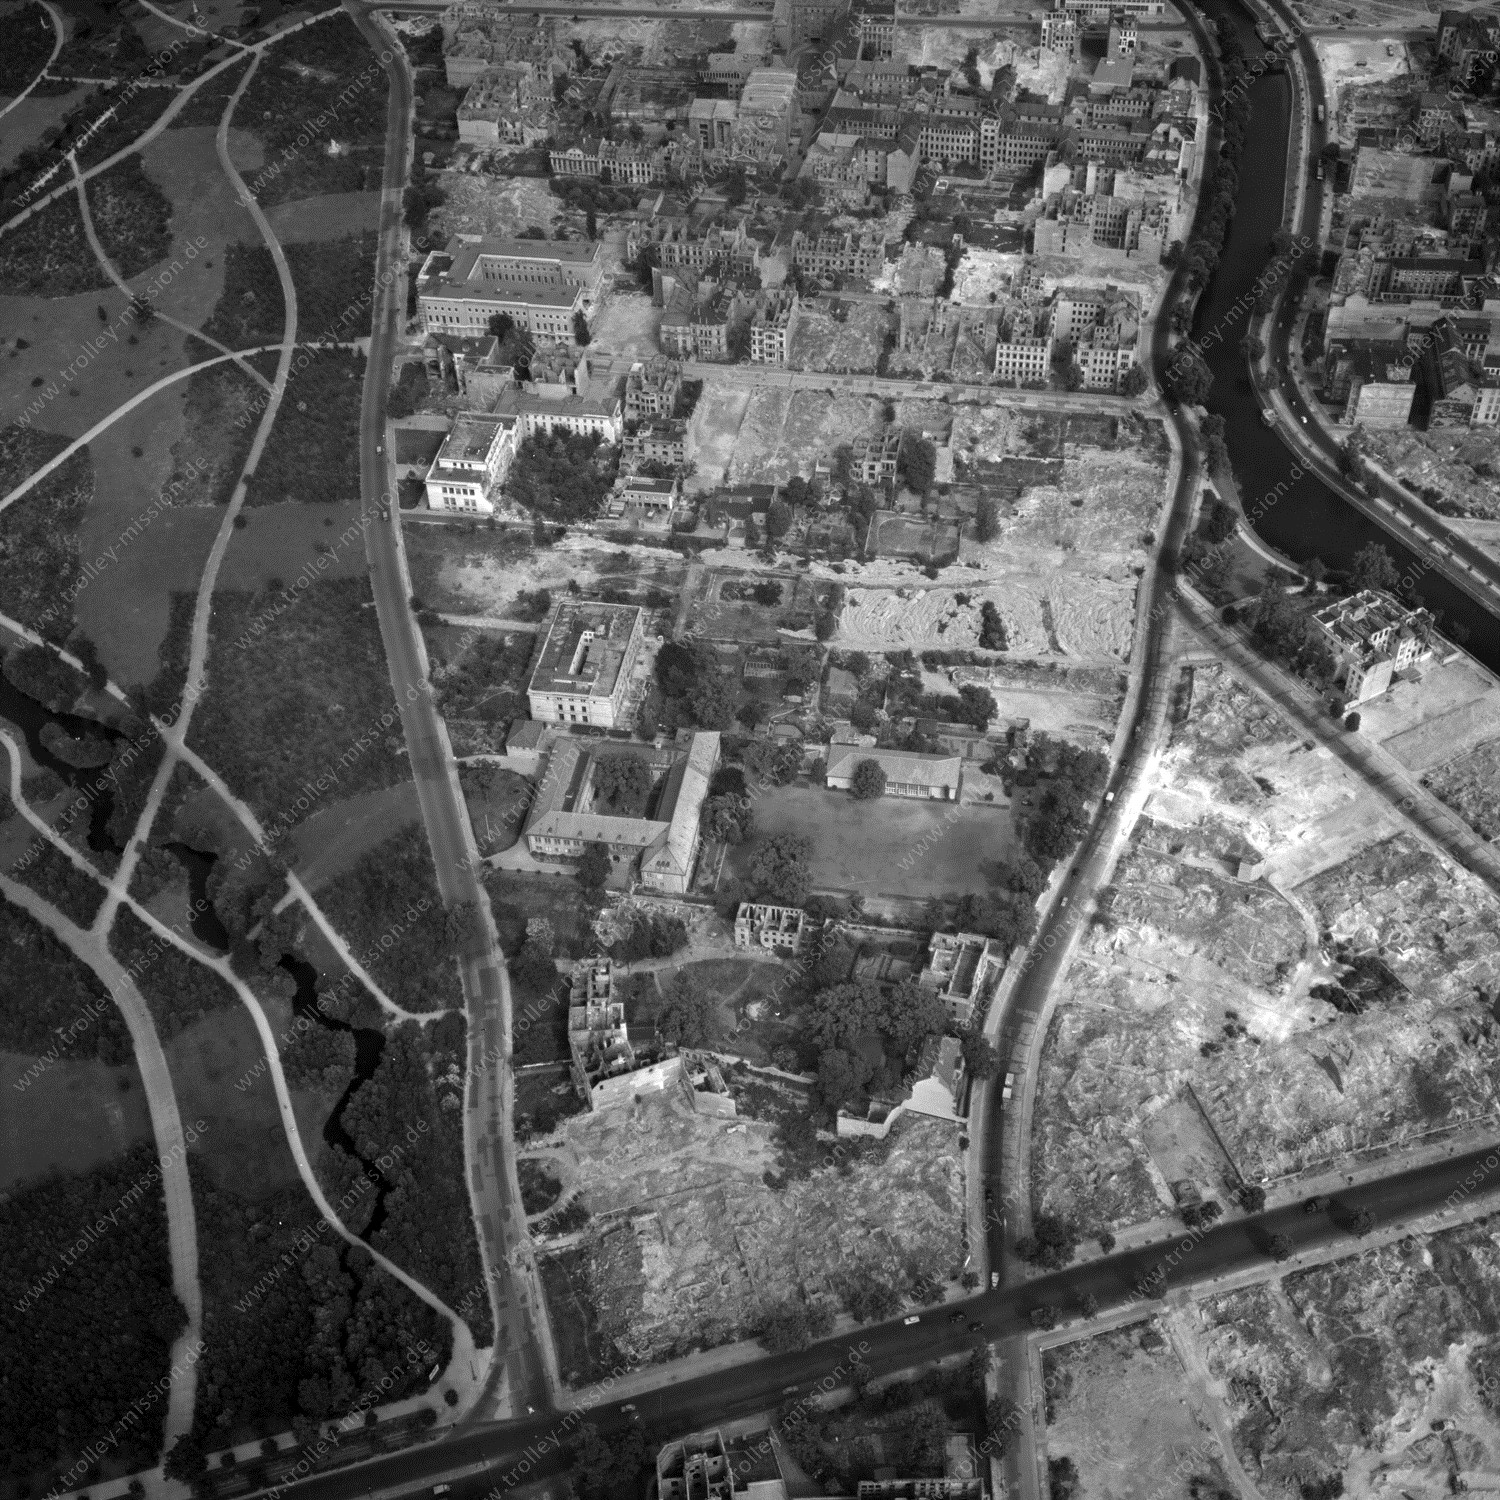 Alte Fotos und Luftbilder von Berlin - Luftbildaufnahme Nr. 04 - Historische Luftaufnahmen von West-Berlin aus dem Jahr 1954 - Flugstrecke Whiskey